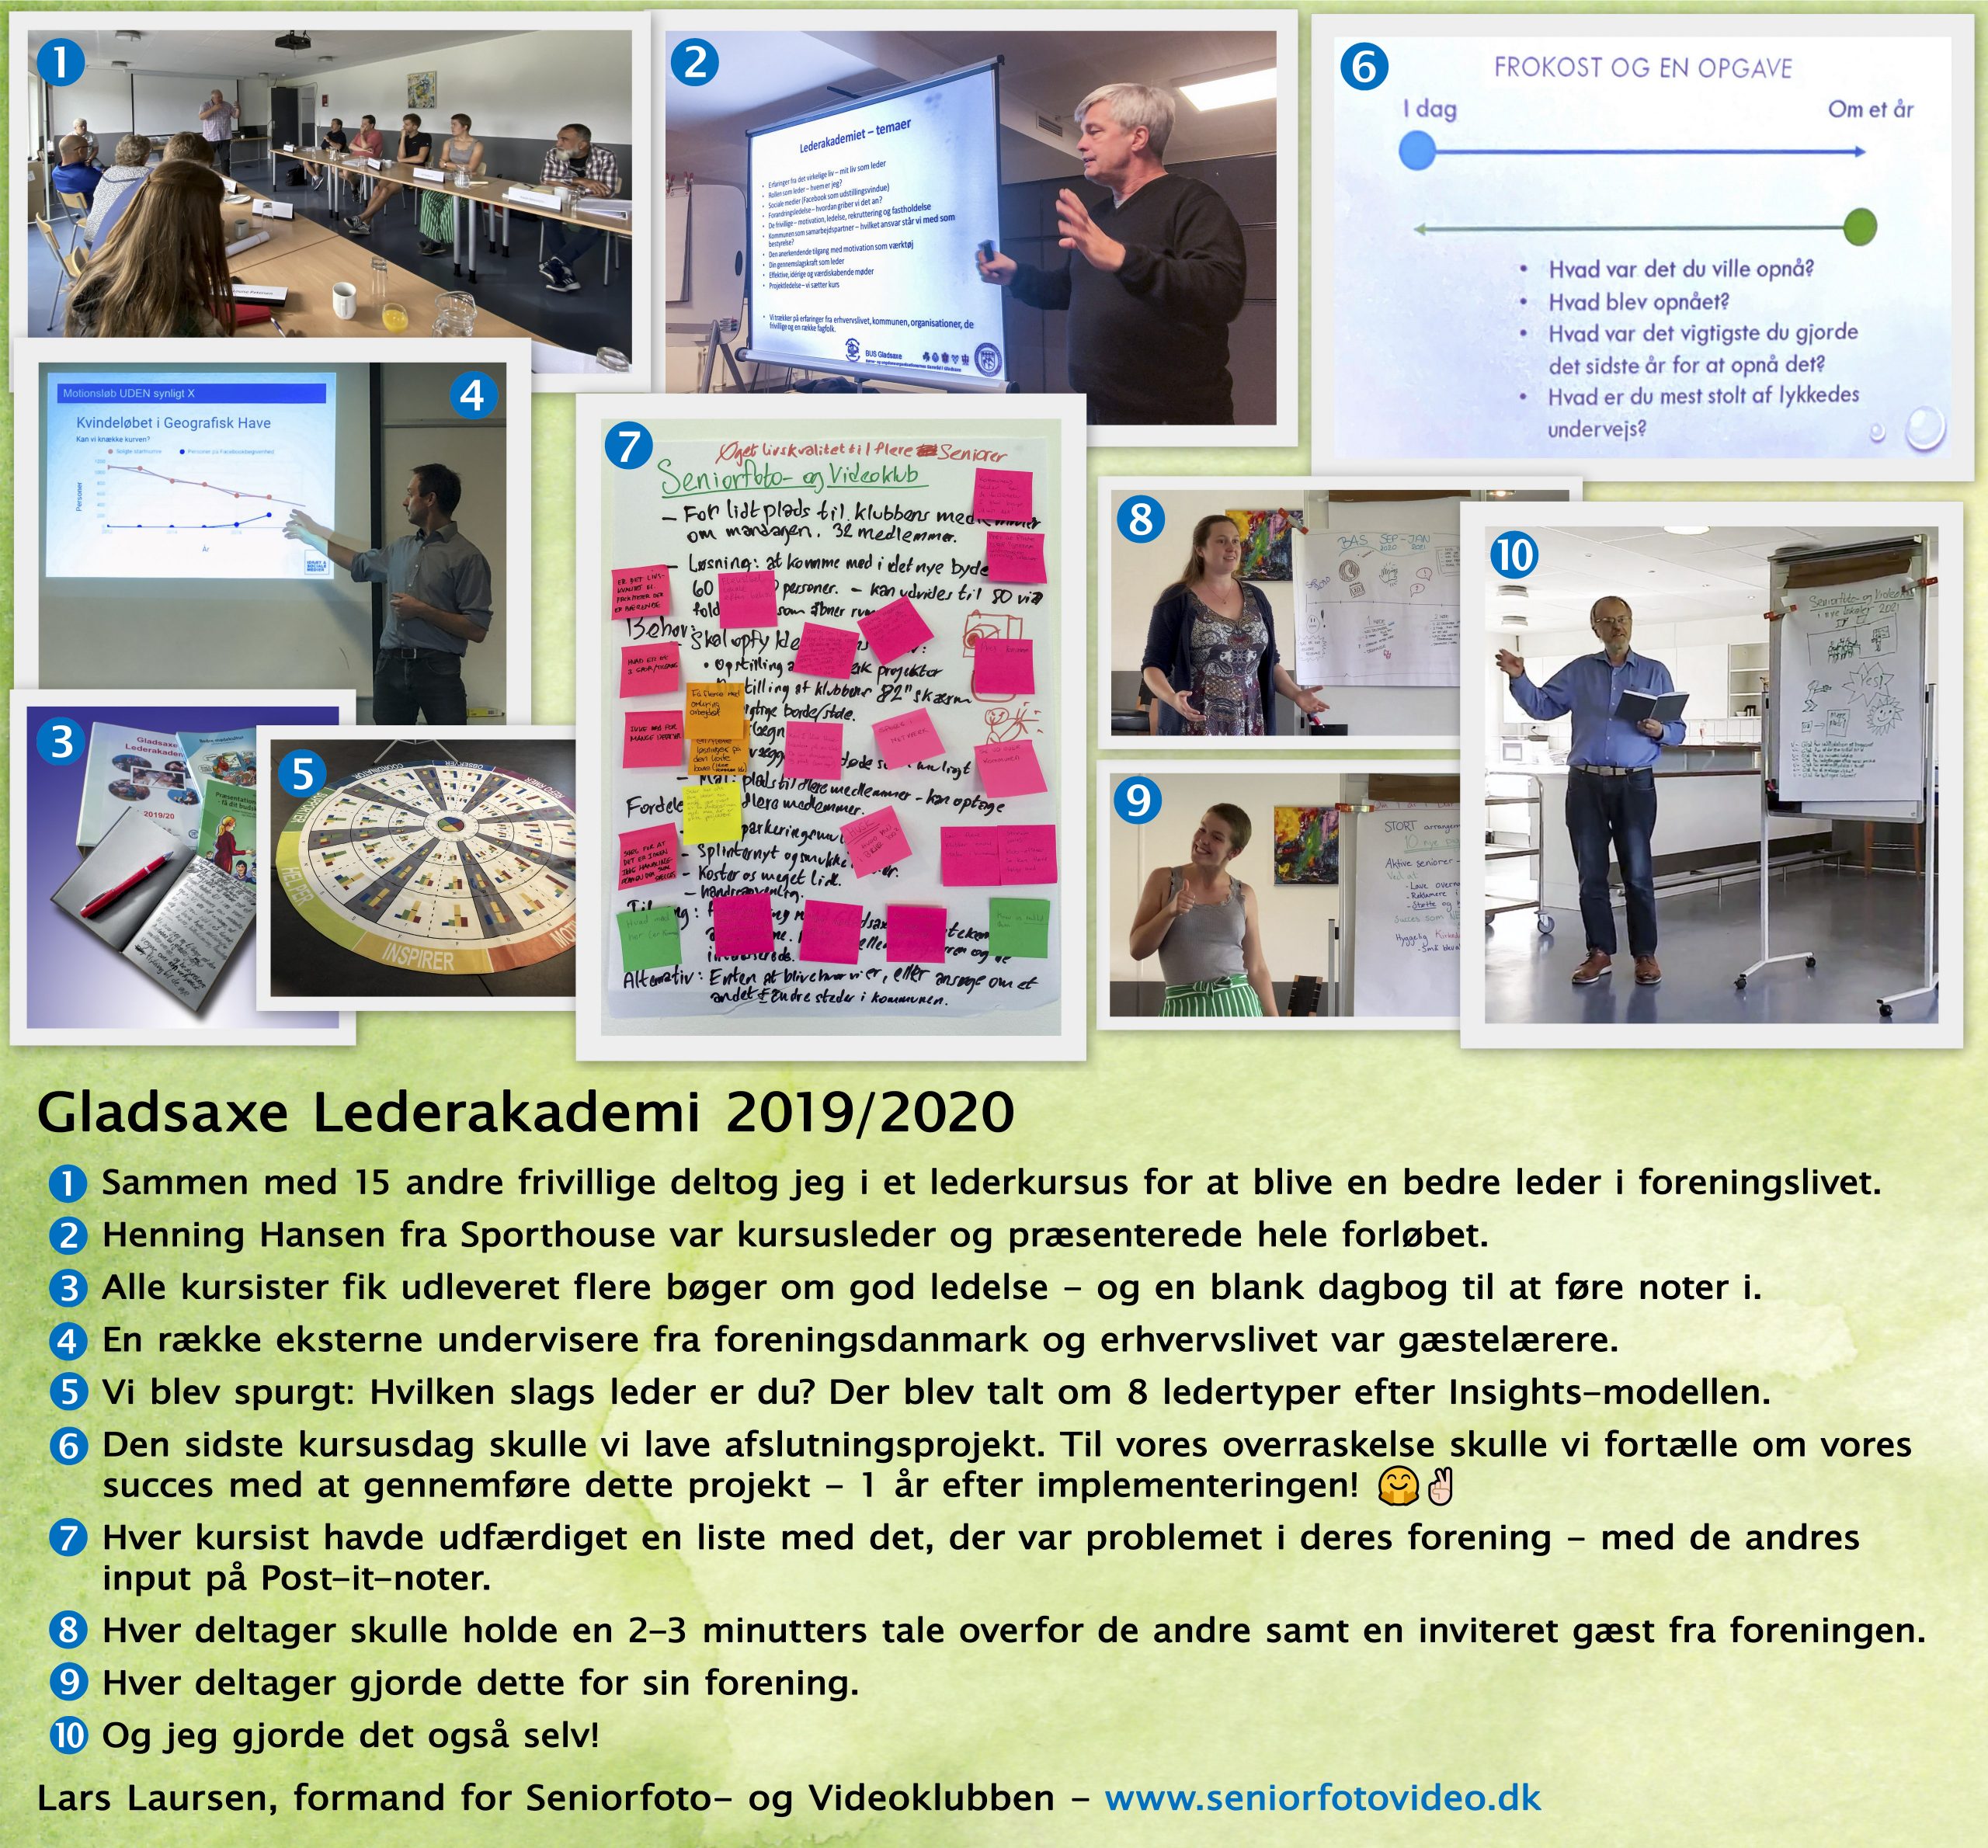 En fotoserie om Lars Laursens deltagelse i et lederkursus for frivillige på Gladsaxe Lederakademi i 2019/2020 – her med tekst på grøn baggrund. Kan forstørres. 